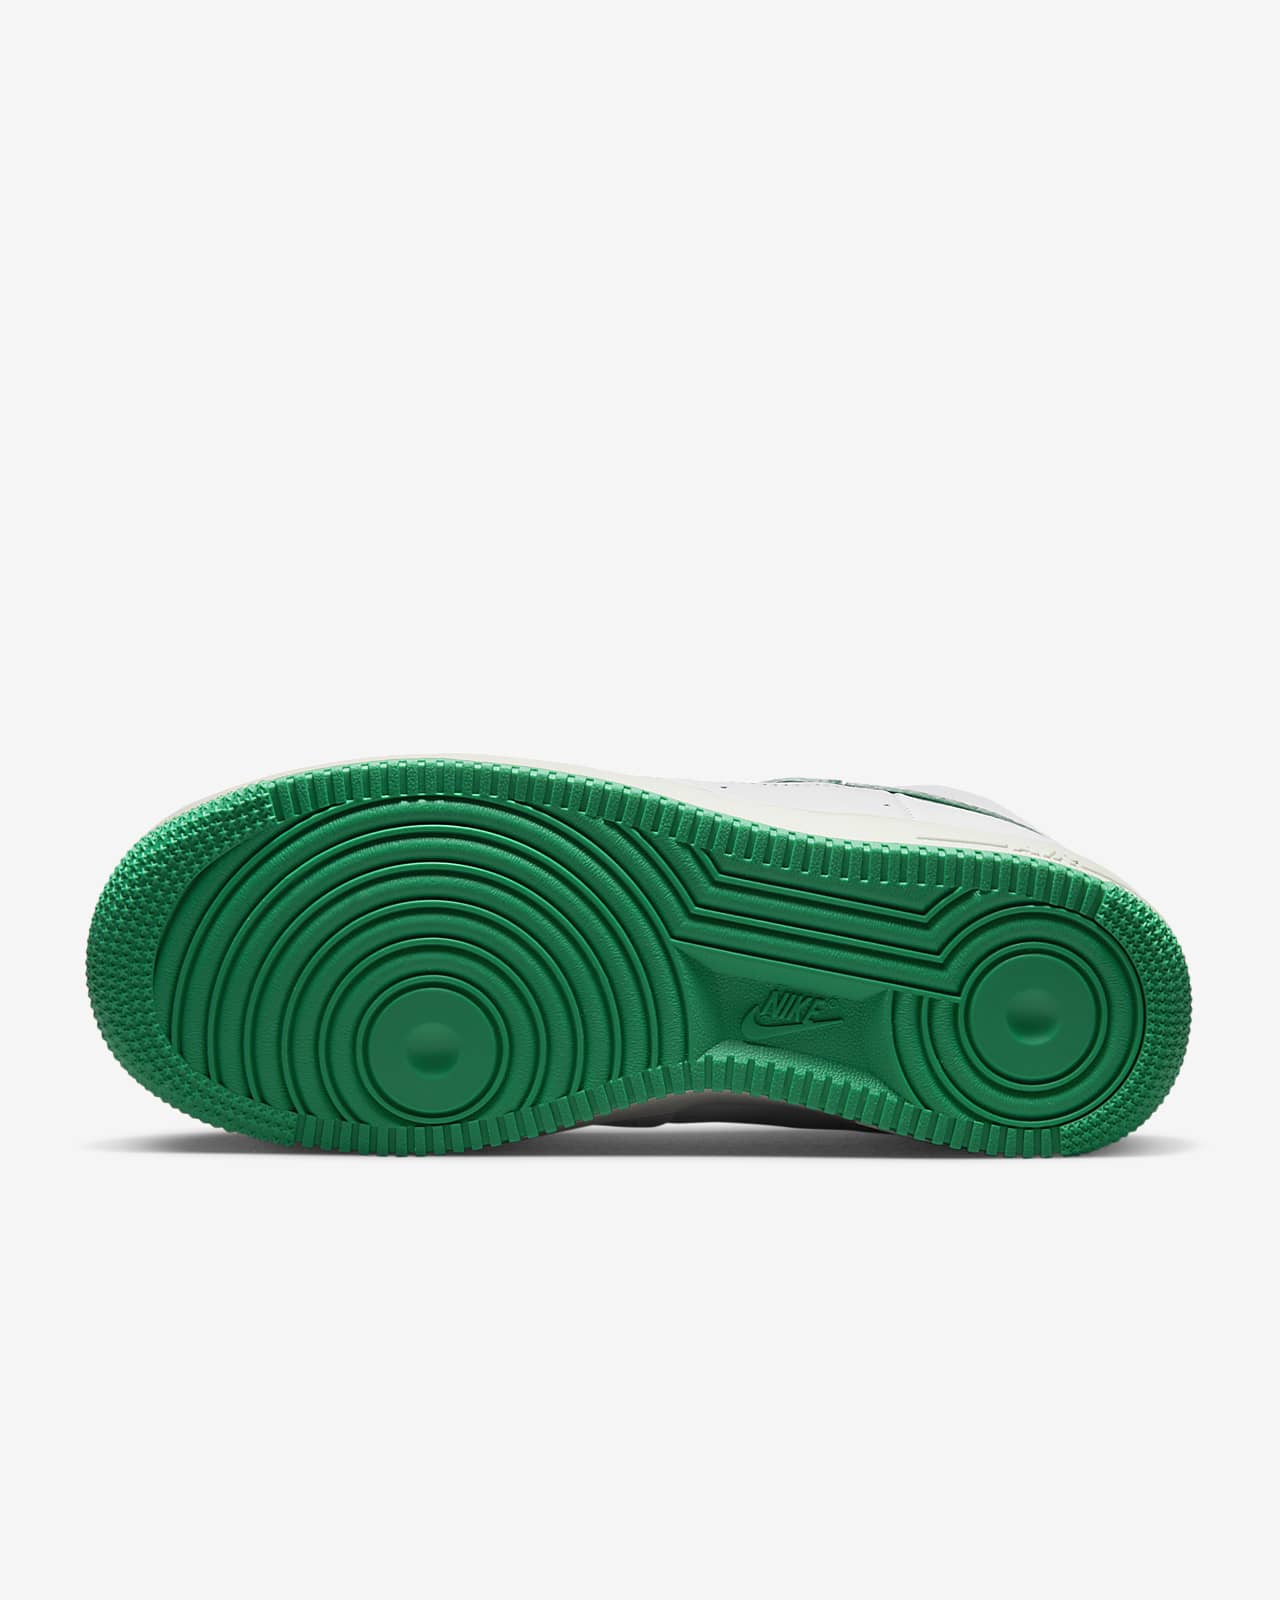 Zapatillas deportivas Nike verdes de mujer